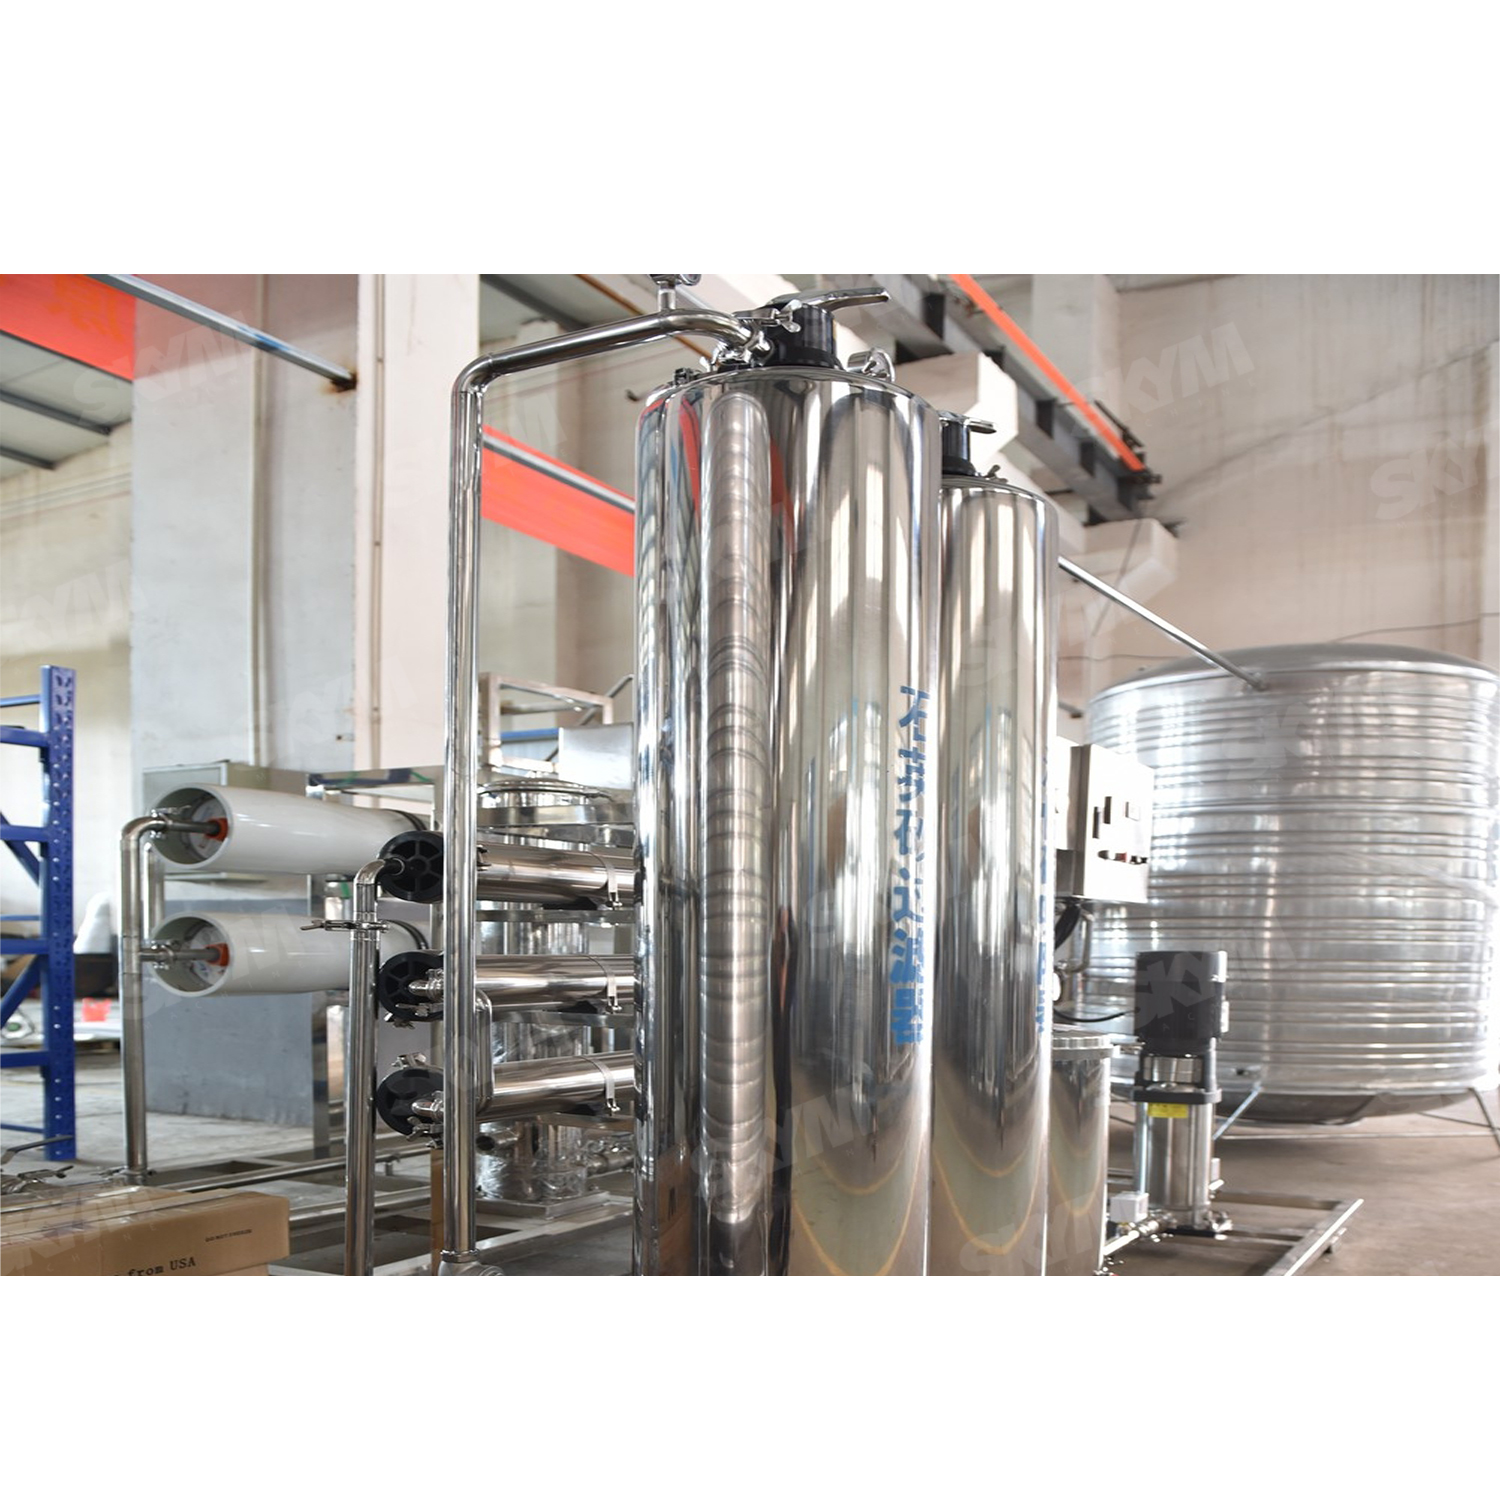 Máquina de tratamiento de agua UV industrial RO 6000LPH